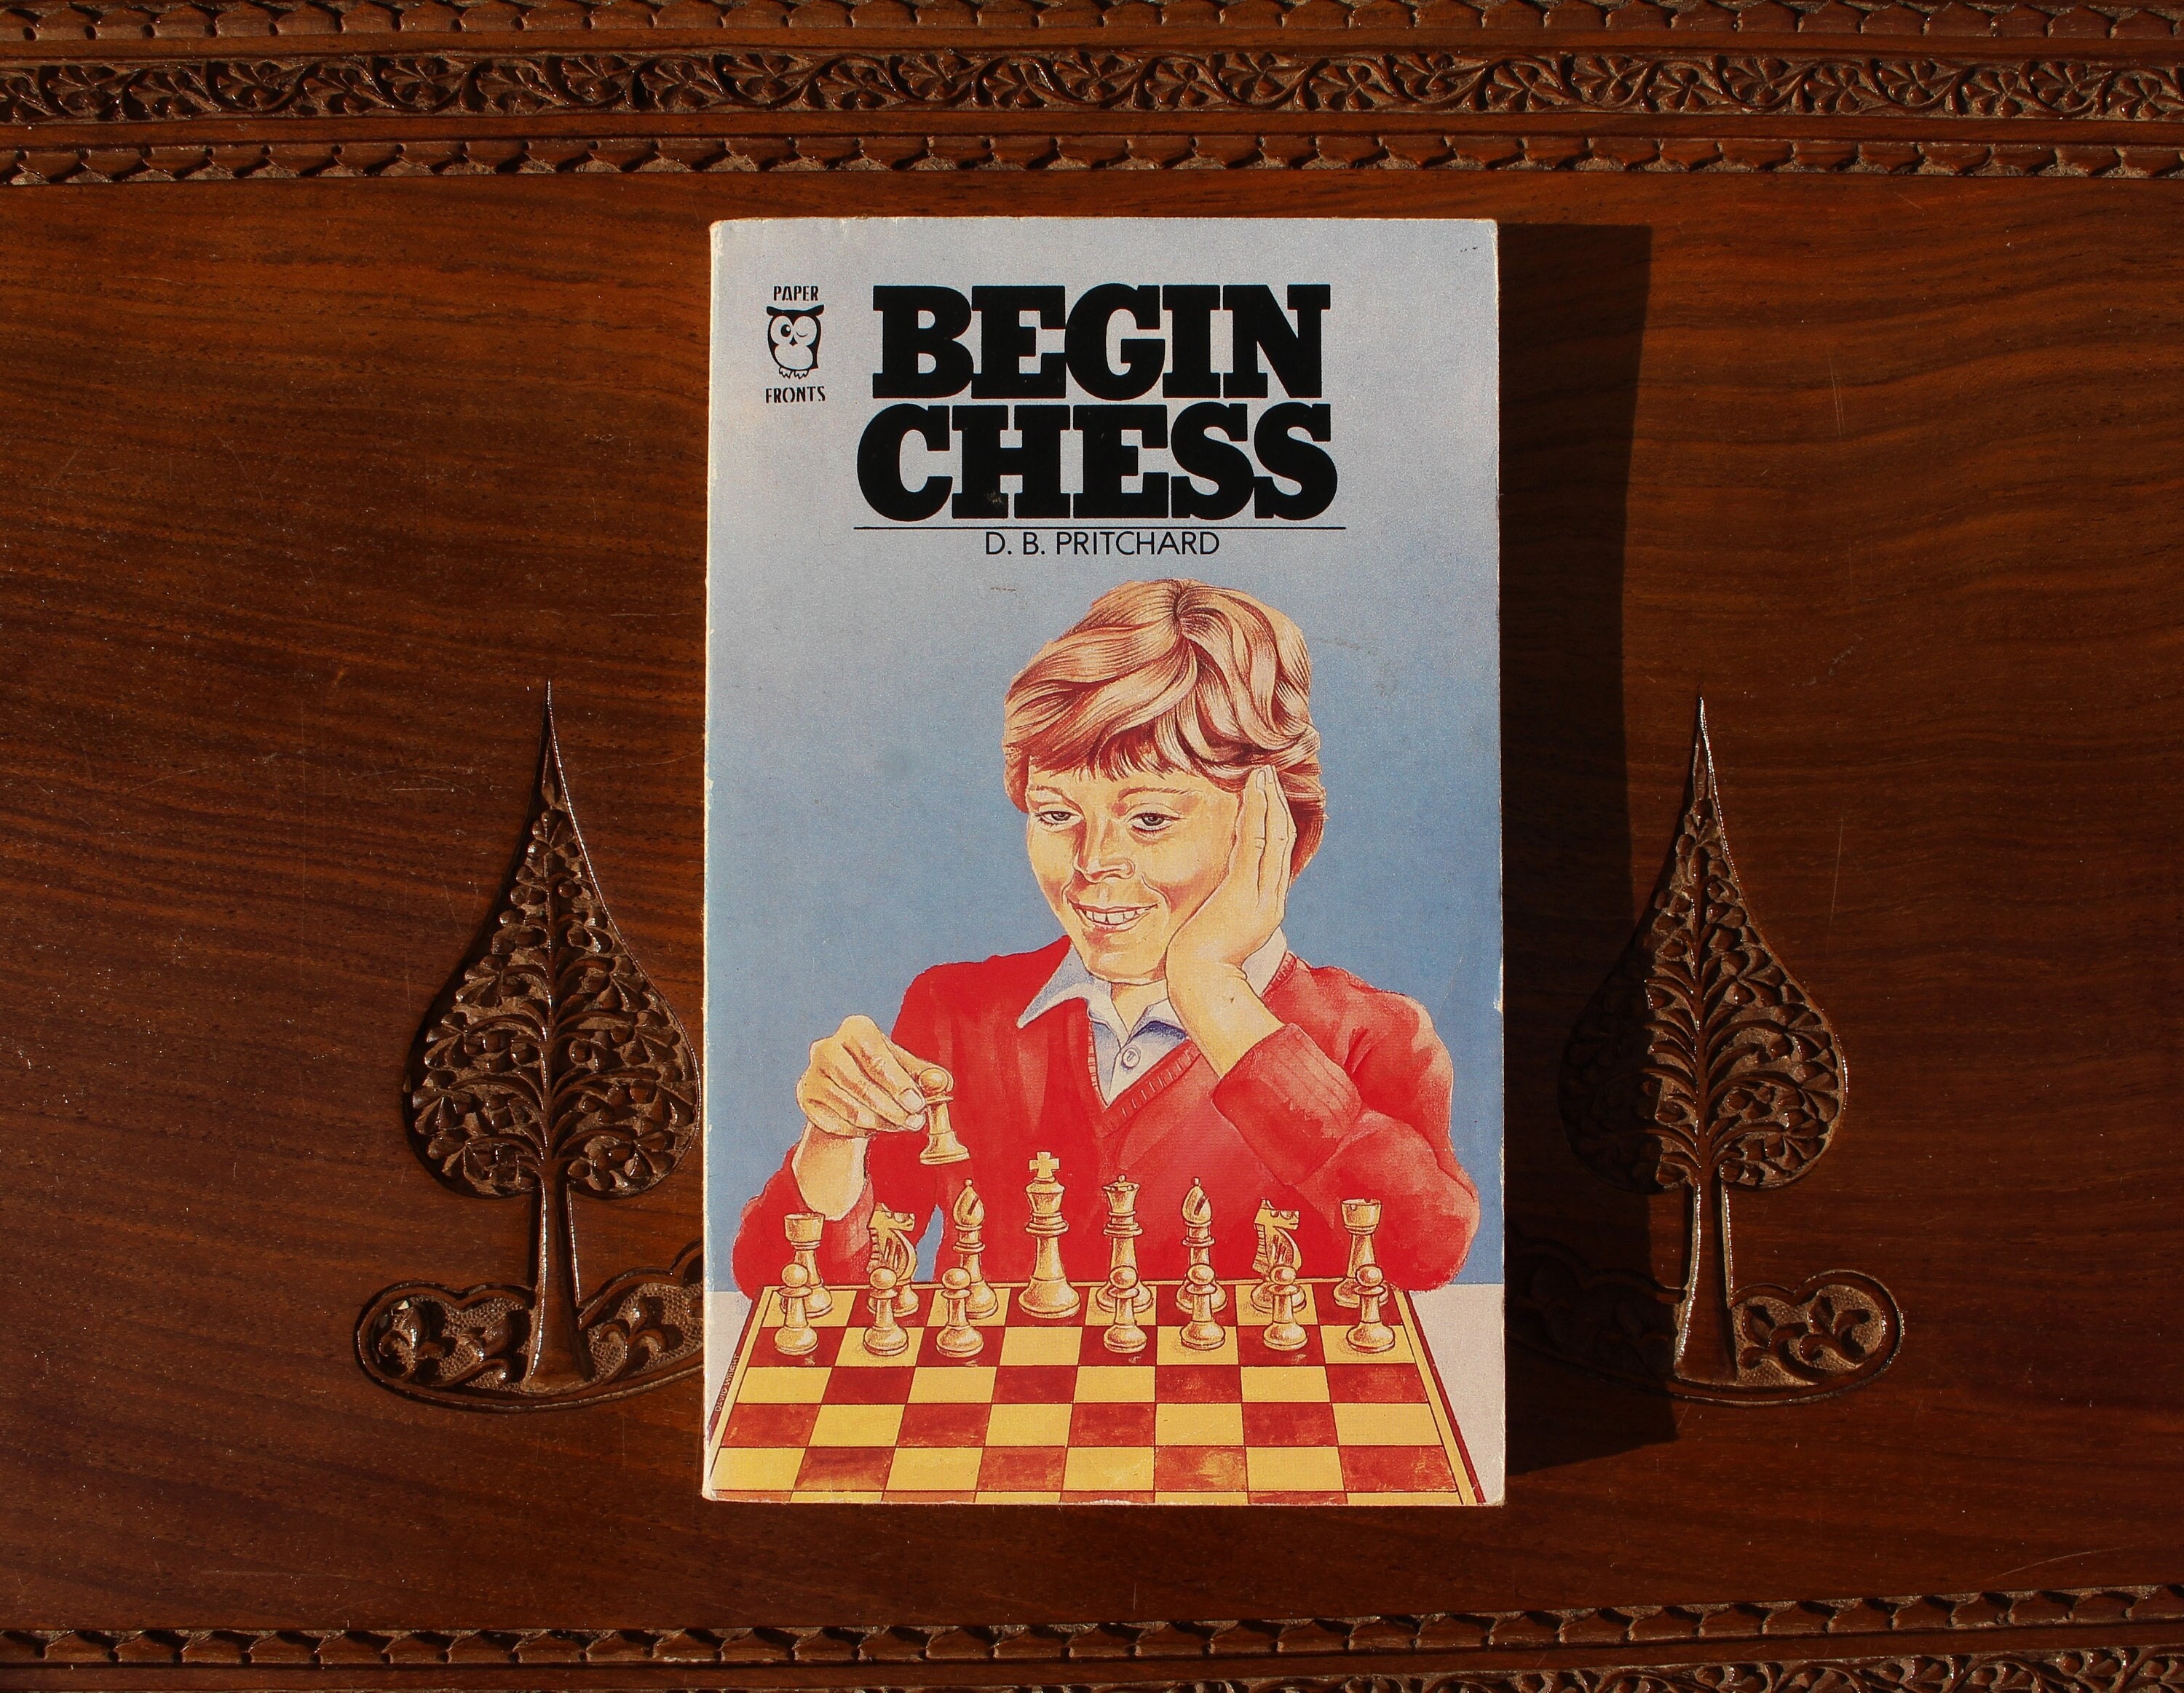 Scotch Gambit, PDF, Chess Openings